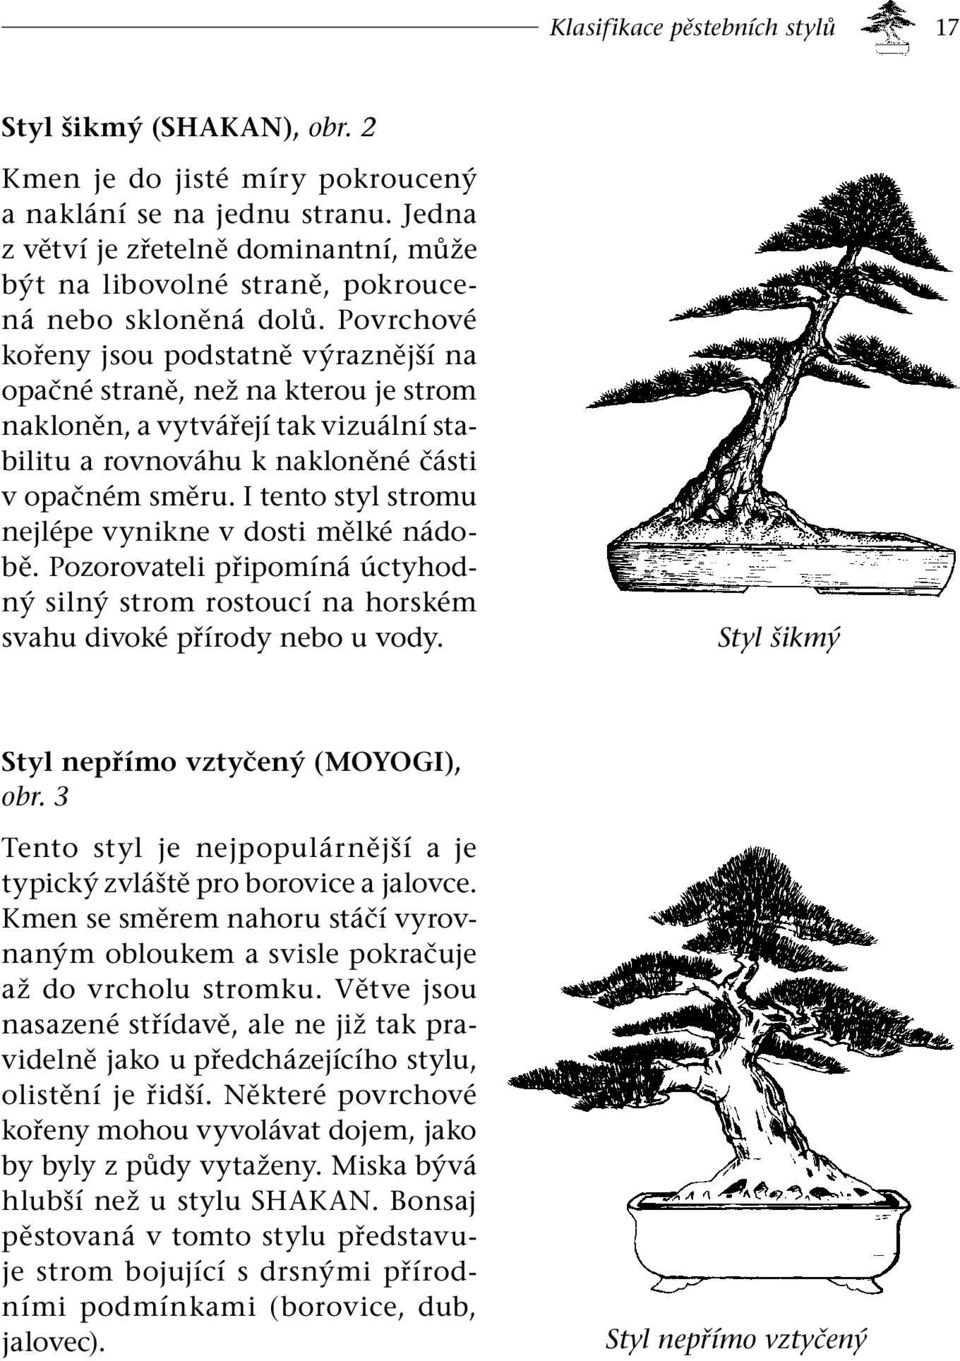 Povrchové kořeny jsou podstatně výraznější na opačné straně, než na kterou je strom nakloněn, a vytvářejí tak vizuální stabilitu a rovnováhu k nakloněné části v opačném směru.